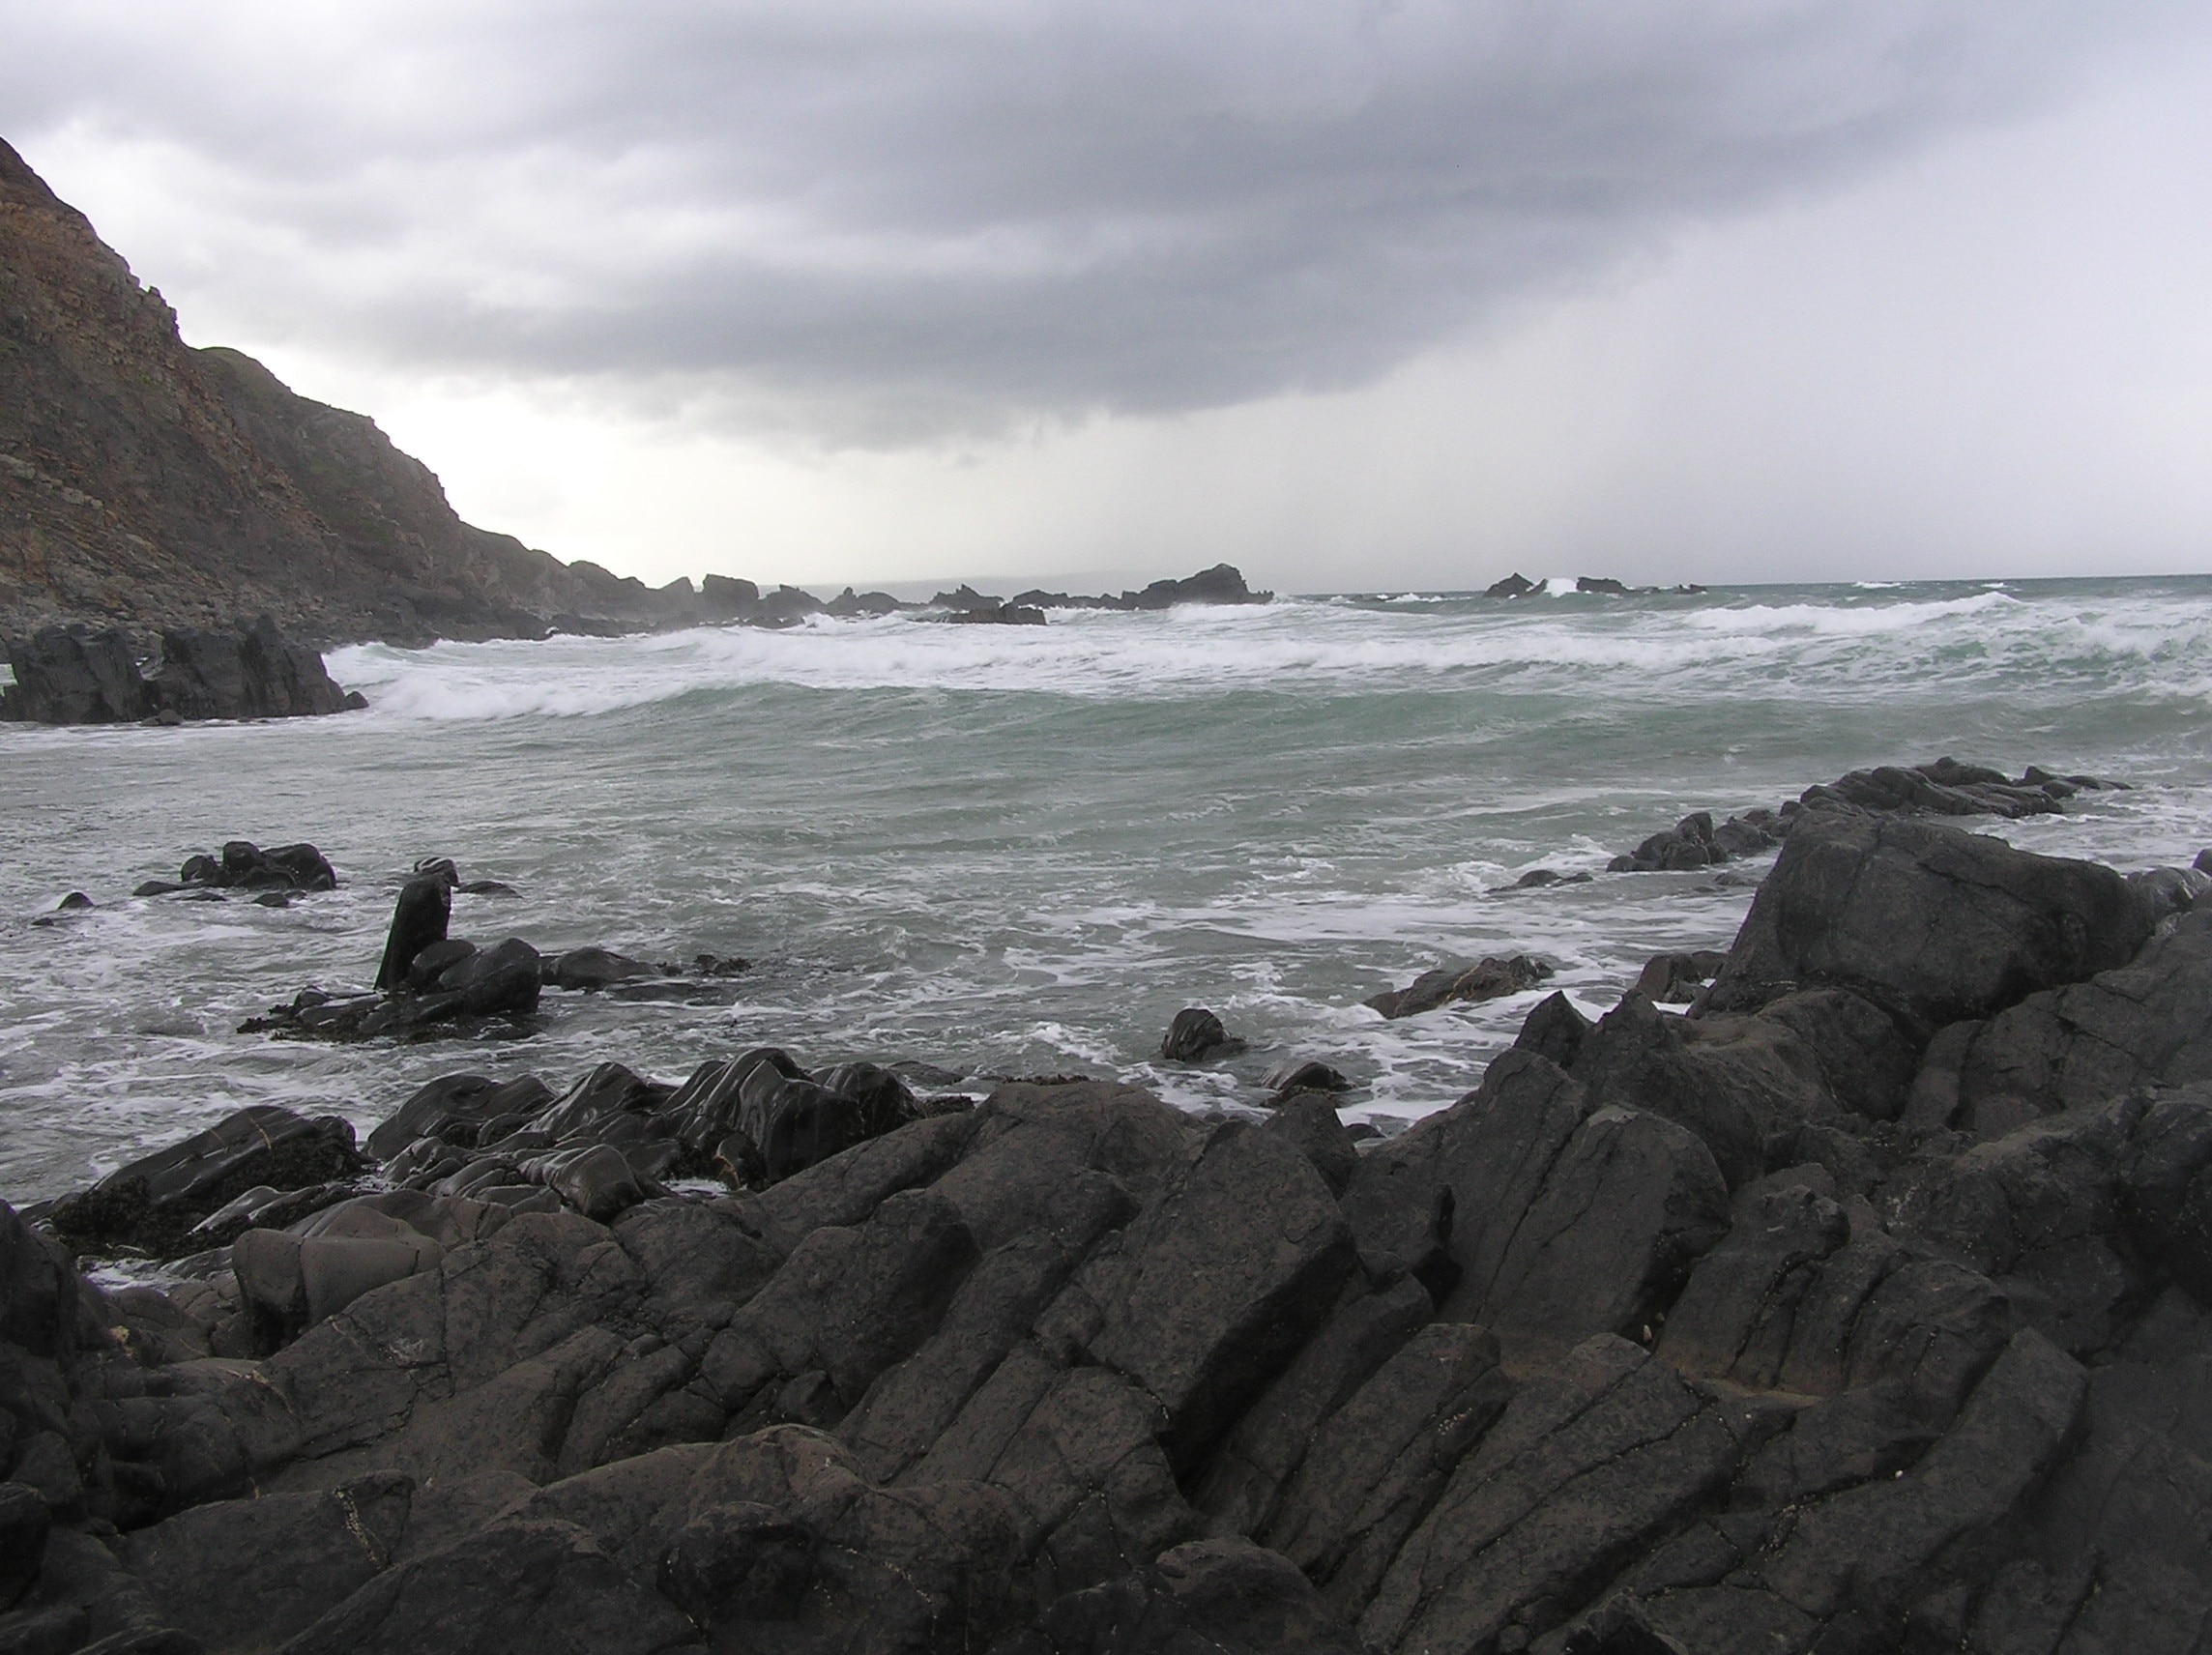 Stormy seas - Duckpool Beach - August 2011